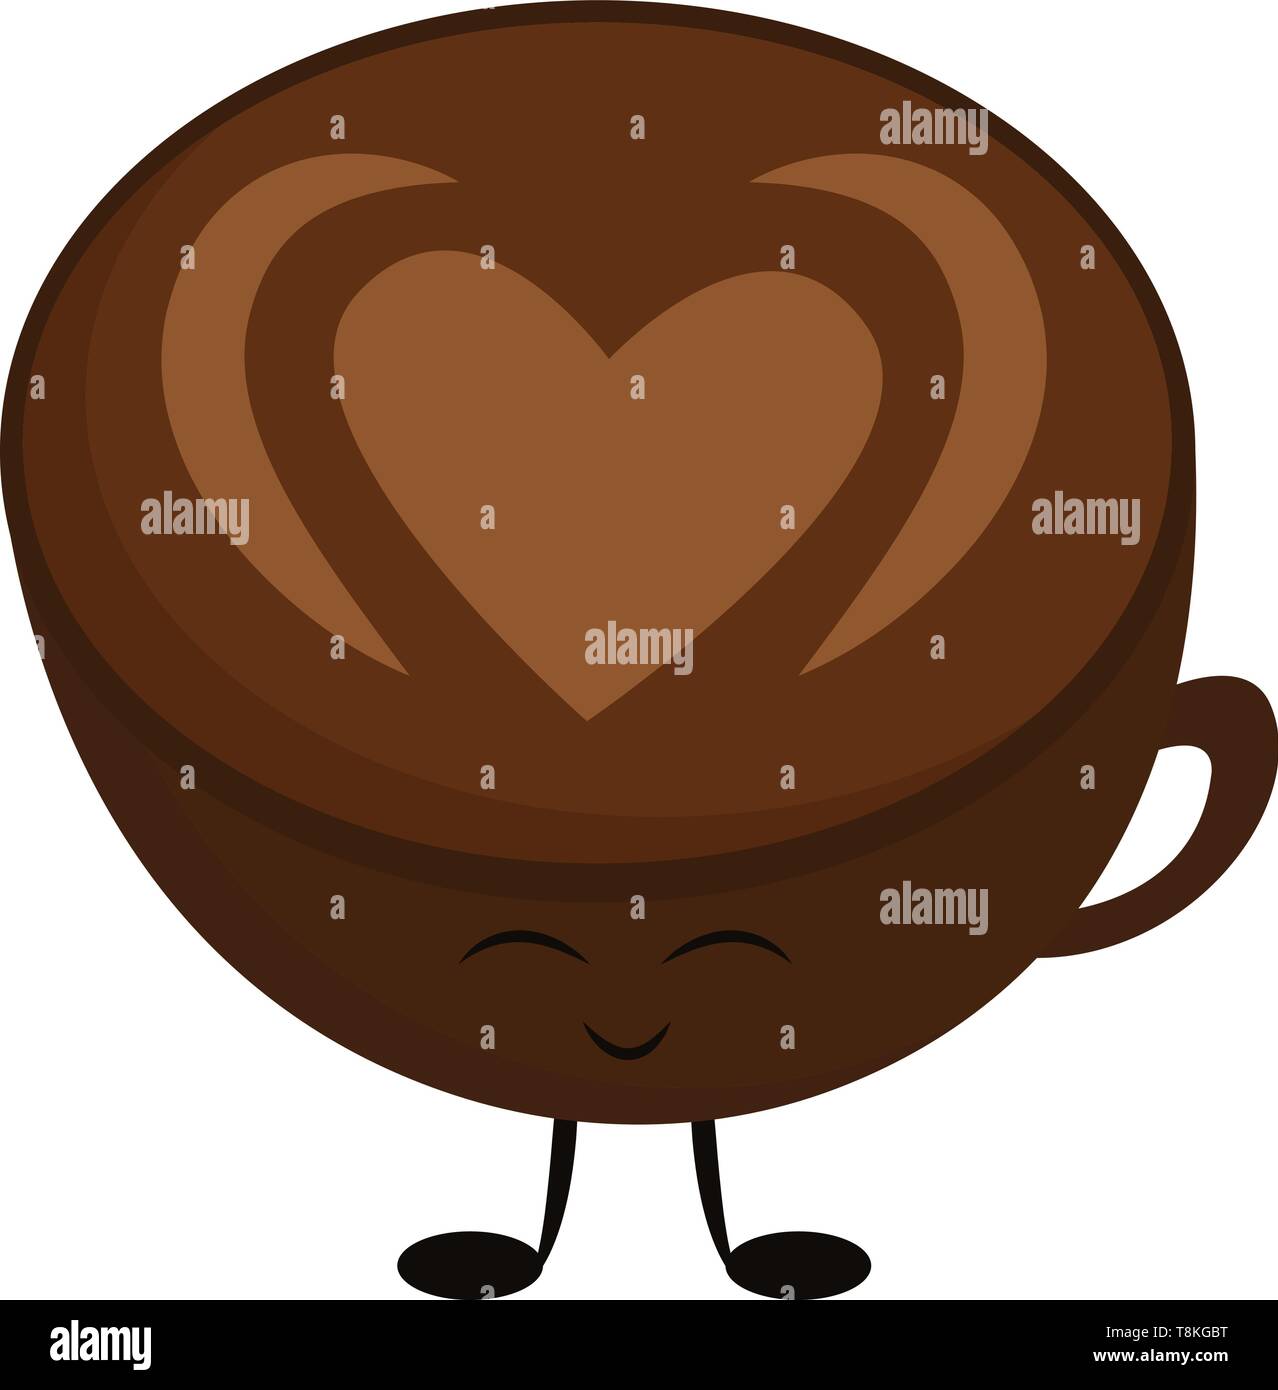 Kaffee ist ein heißes Getränk mit Wasser und in der Erde oder in Pulverform Kaffeebohnen. Kaffee ohne Milch serviert wird schwarzer Kaffee und Kaffee serviert mit Mil Stock Vektor